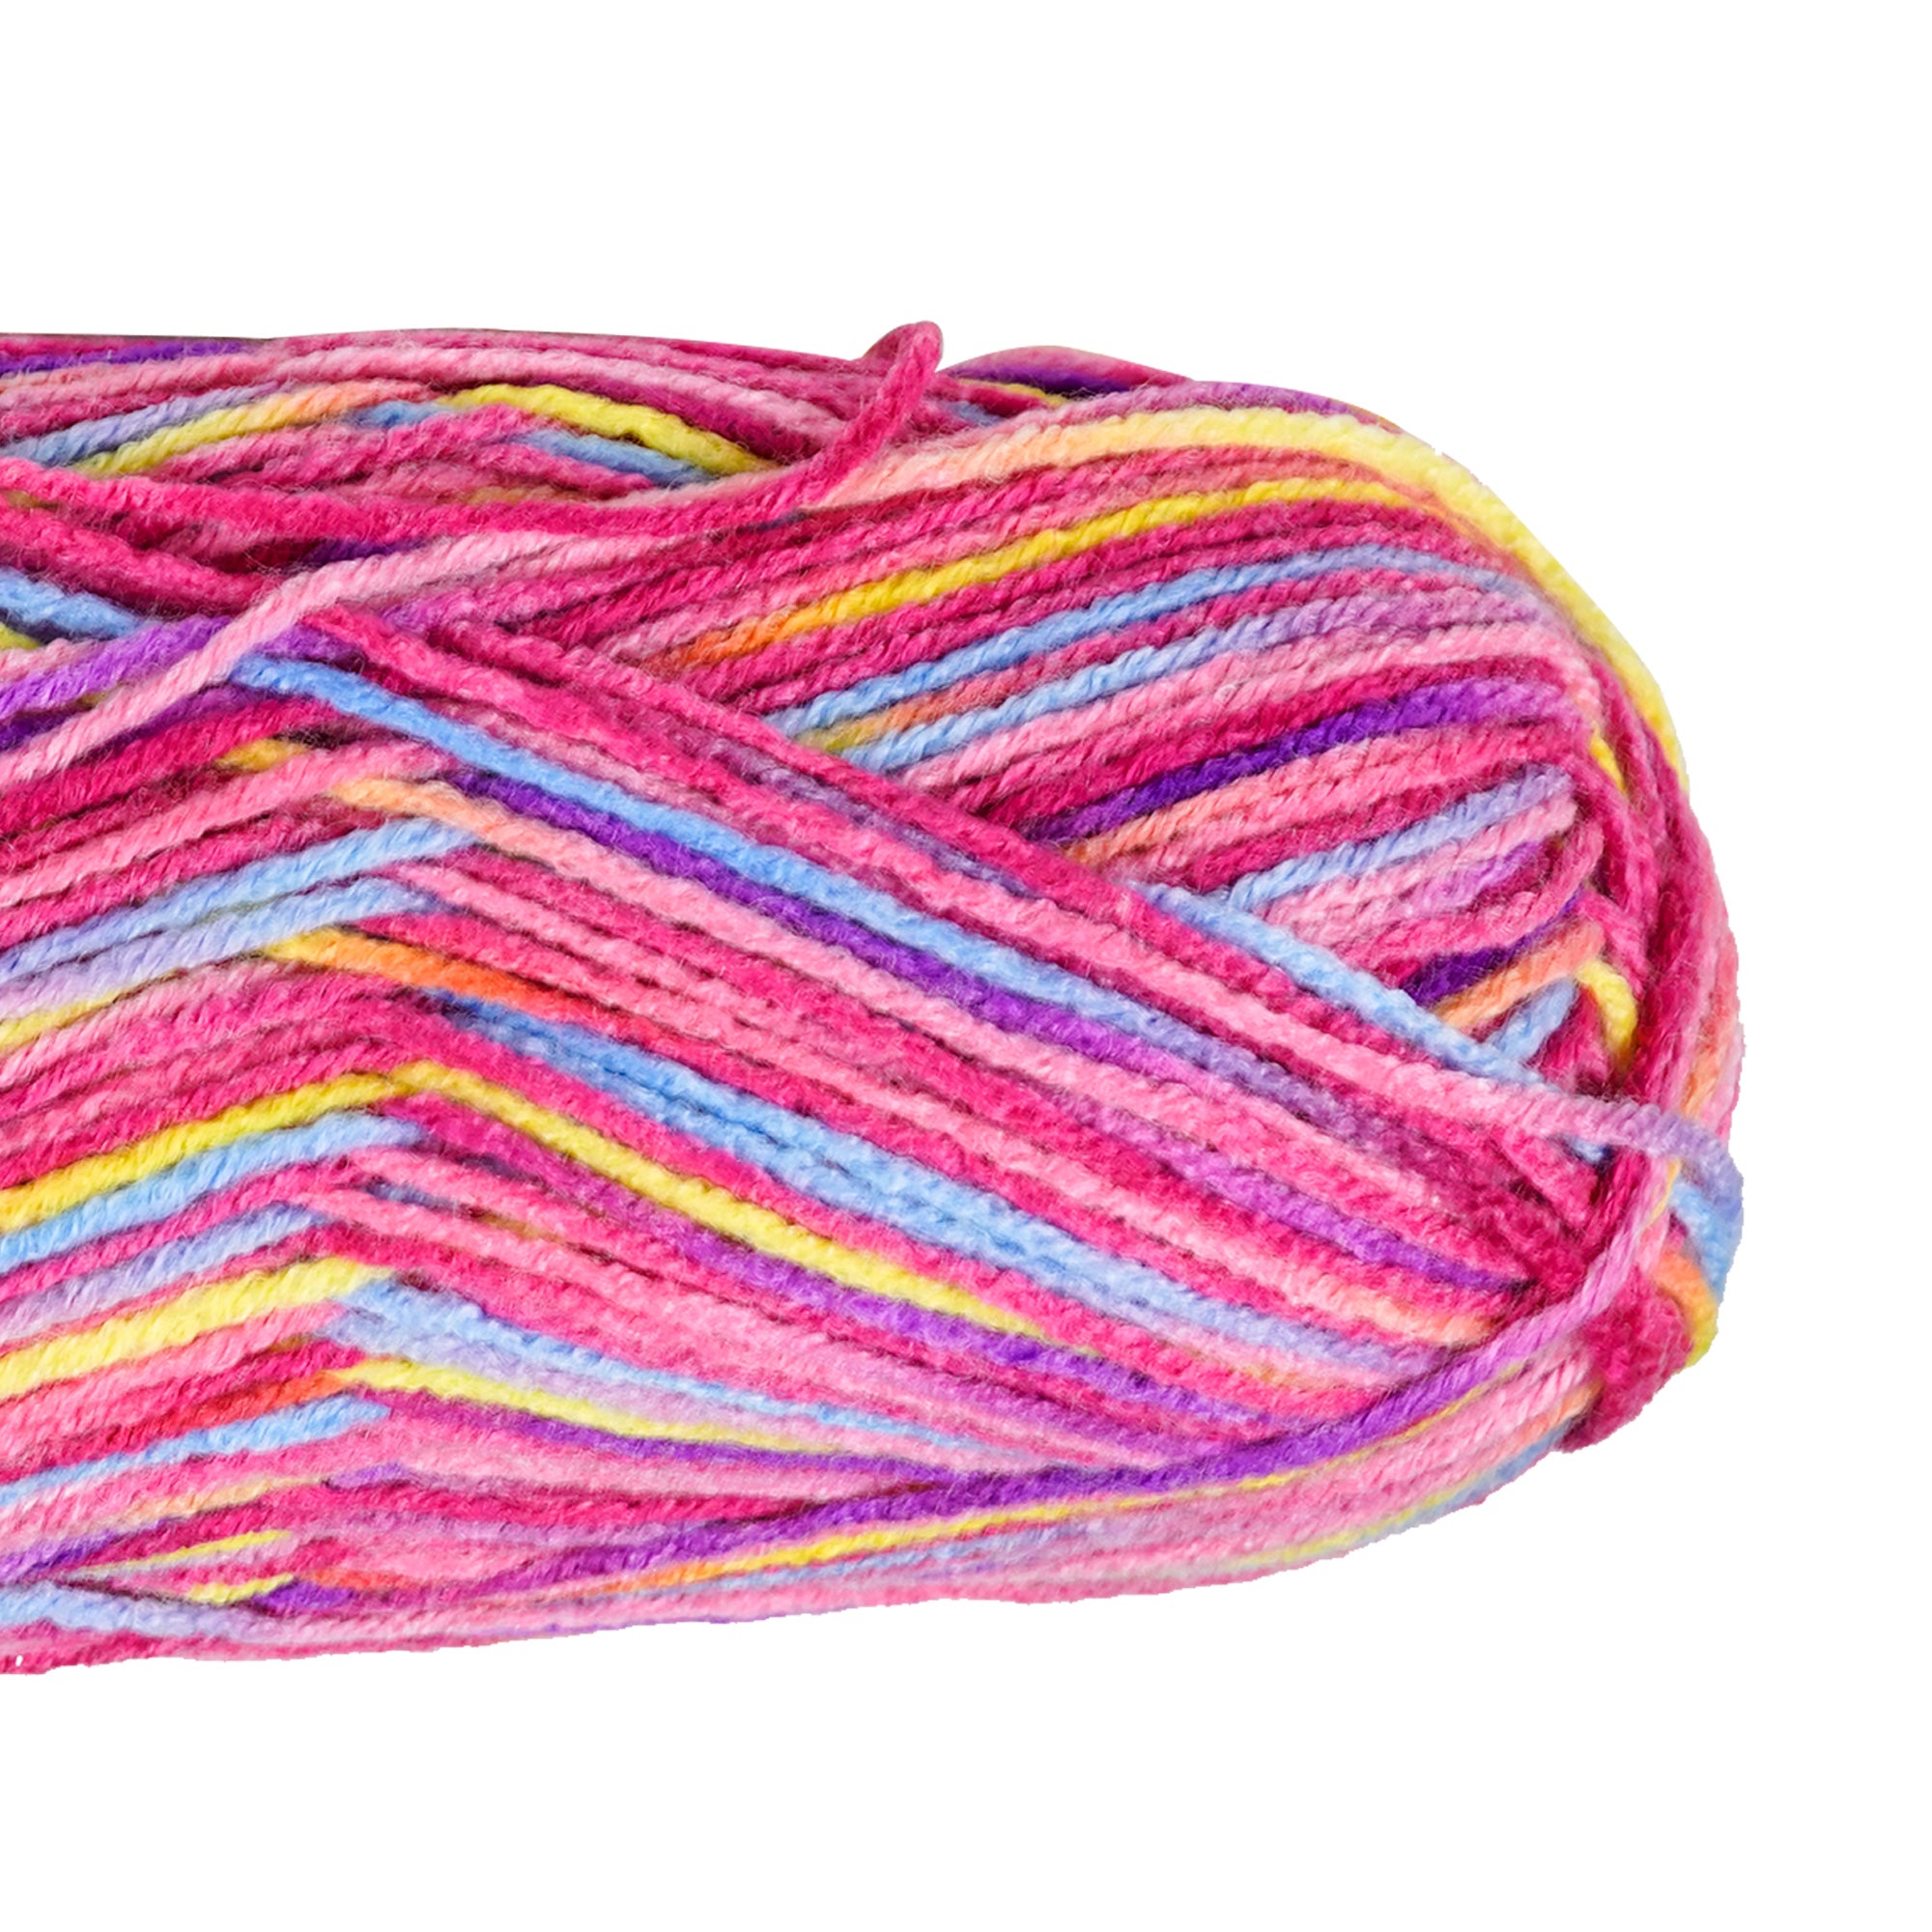 Porta Craft Acrylic Yarn 100% 100Gm 189M 8Ply Rainbow Tutti Frutti